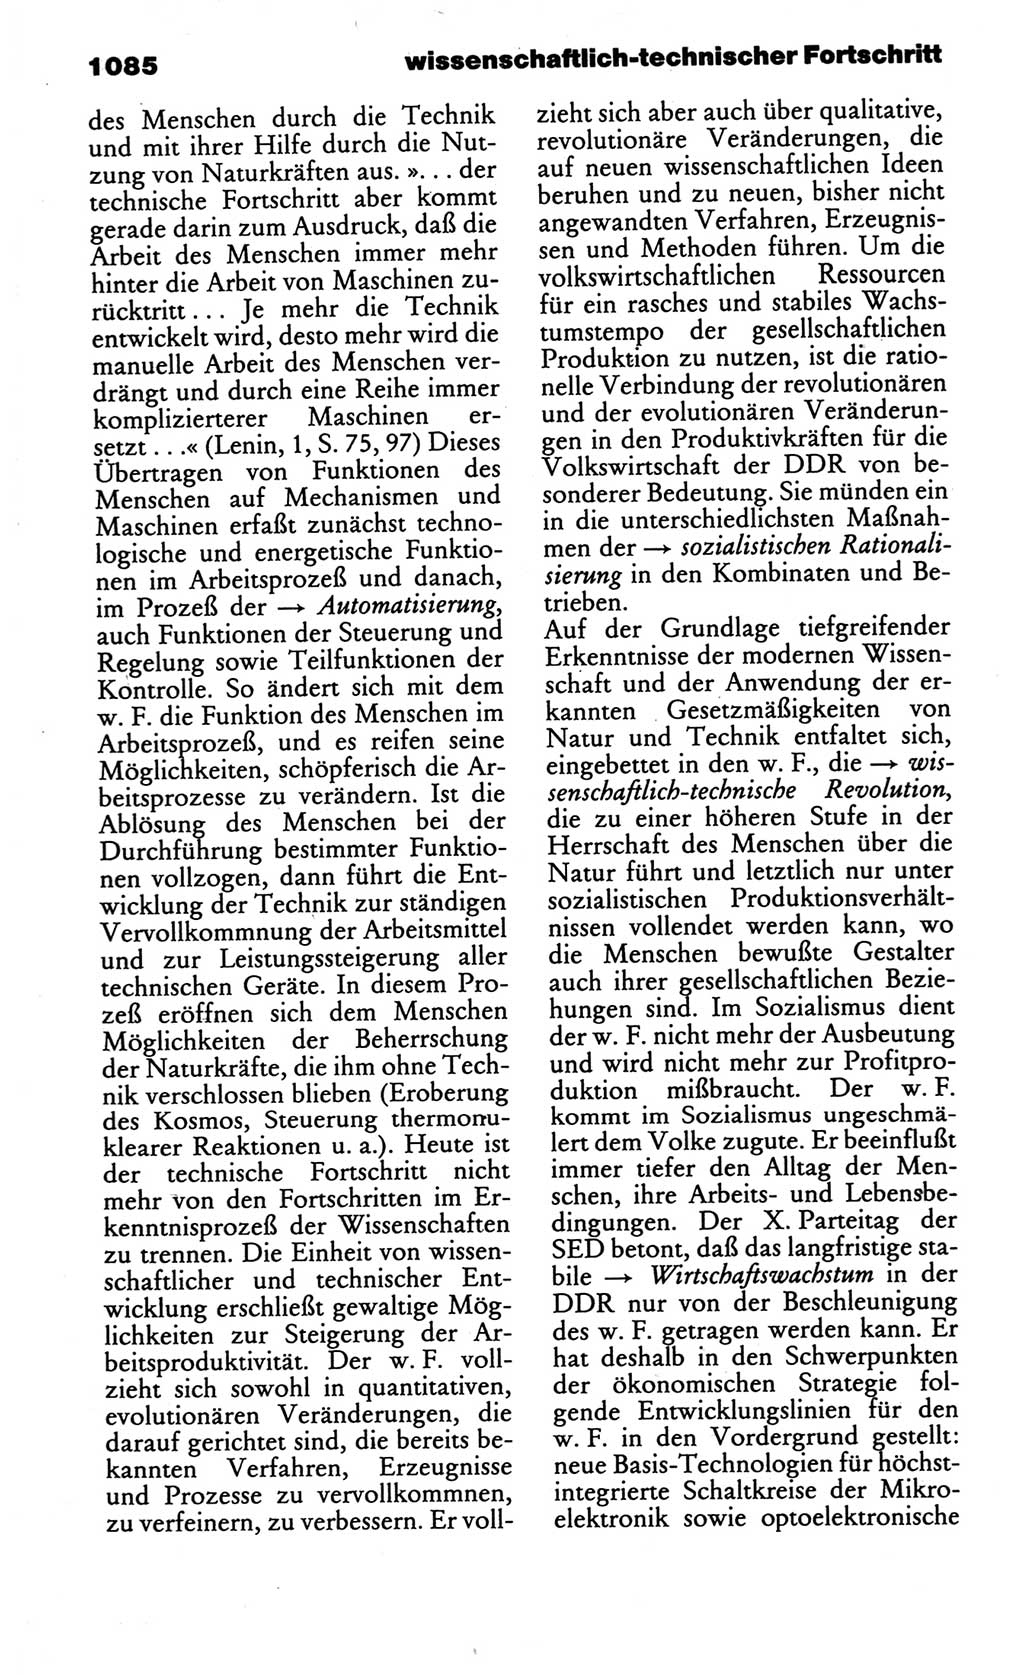 Kleines politisches Wörterbuch [Deutsche Demokratische Republik (DDR)] 1986, Seite 1085 (Kl. pol. Wb. DDR 1986, S. 1085)